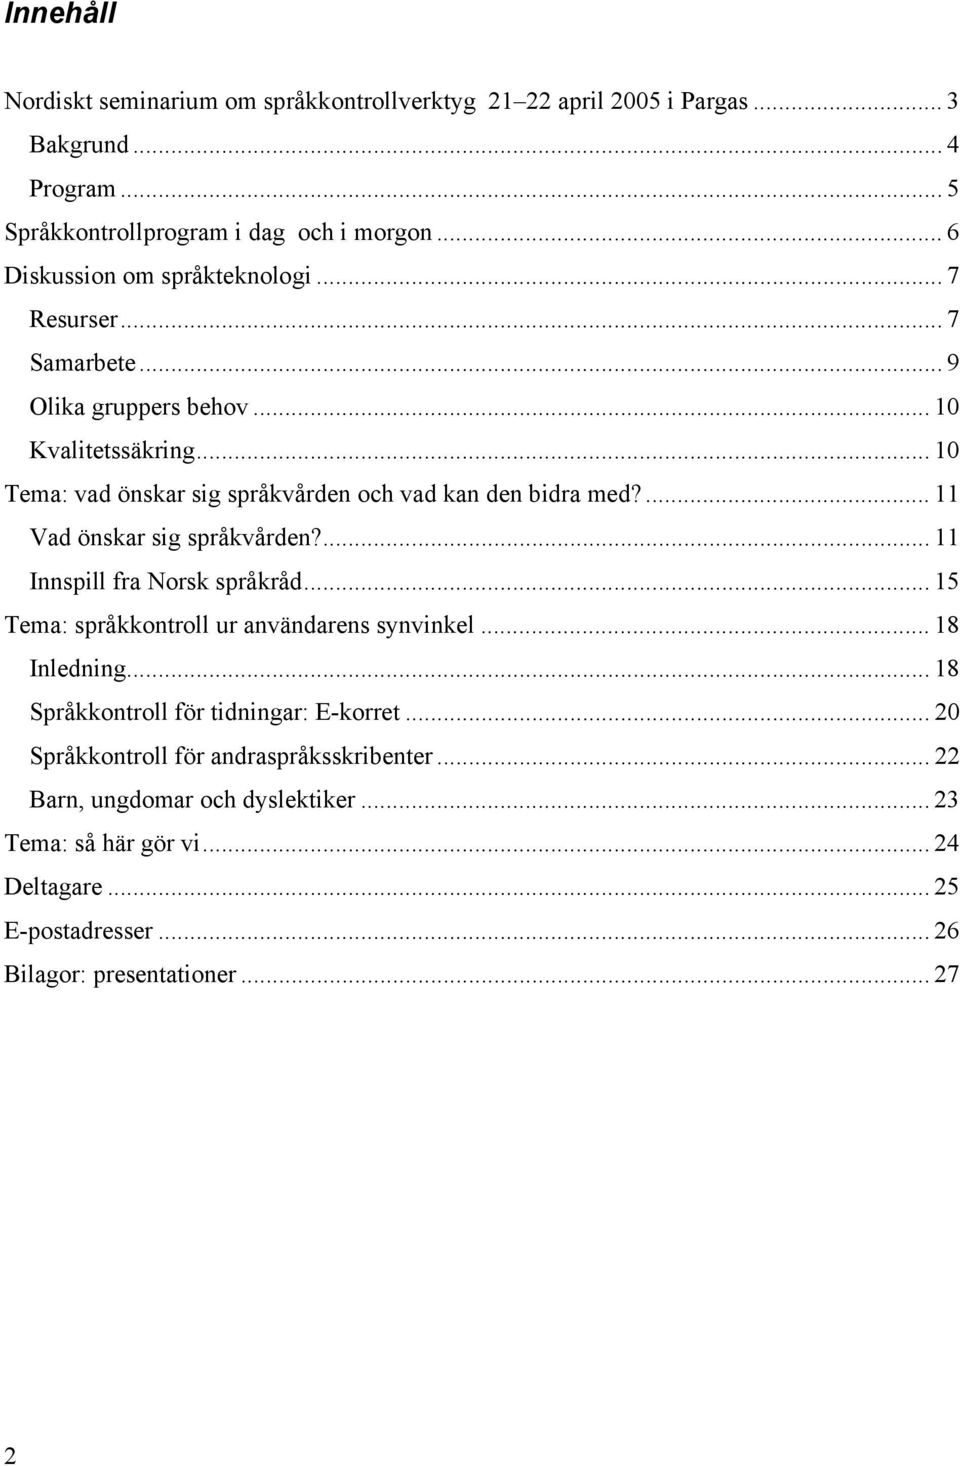 .. 10 Tema: vad önskar sig språkvården och vad kan den bidra med?... 11 Vad önskar sig språkvården?... 11 Innspill fra Norsk språkråd.